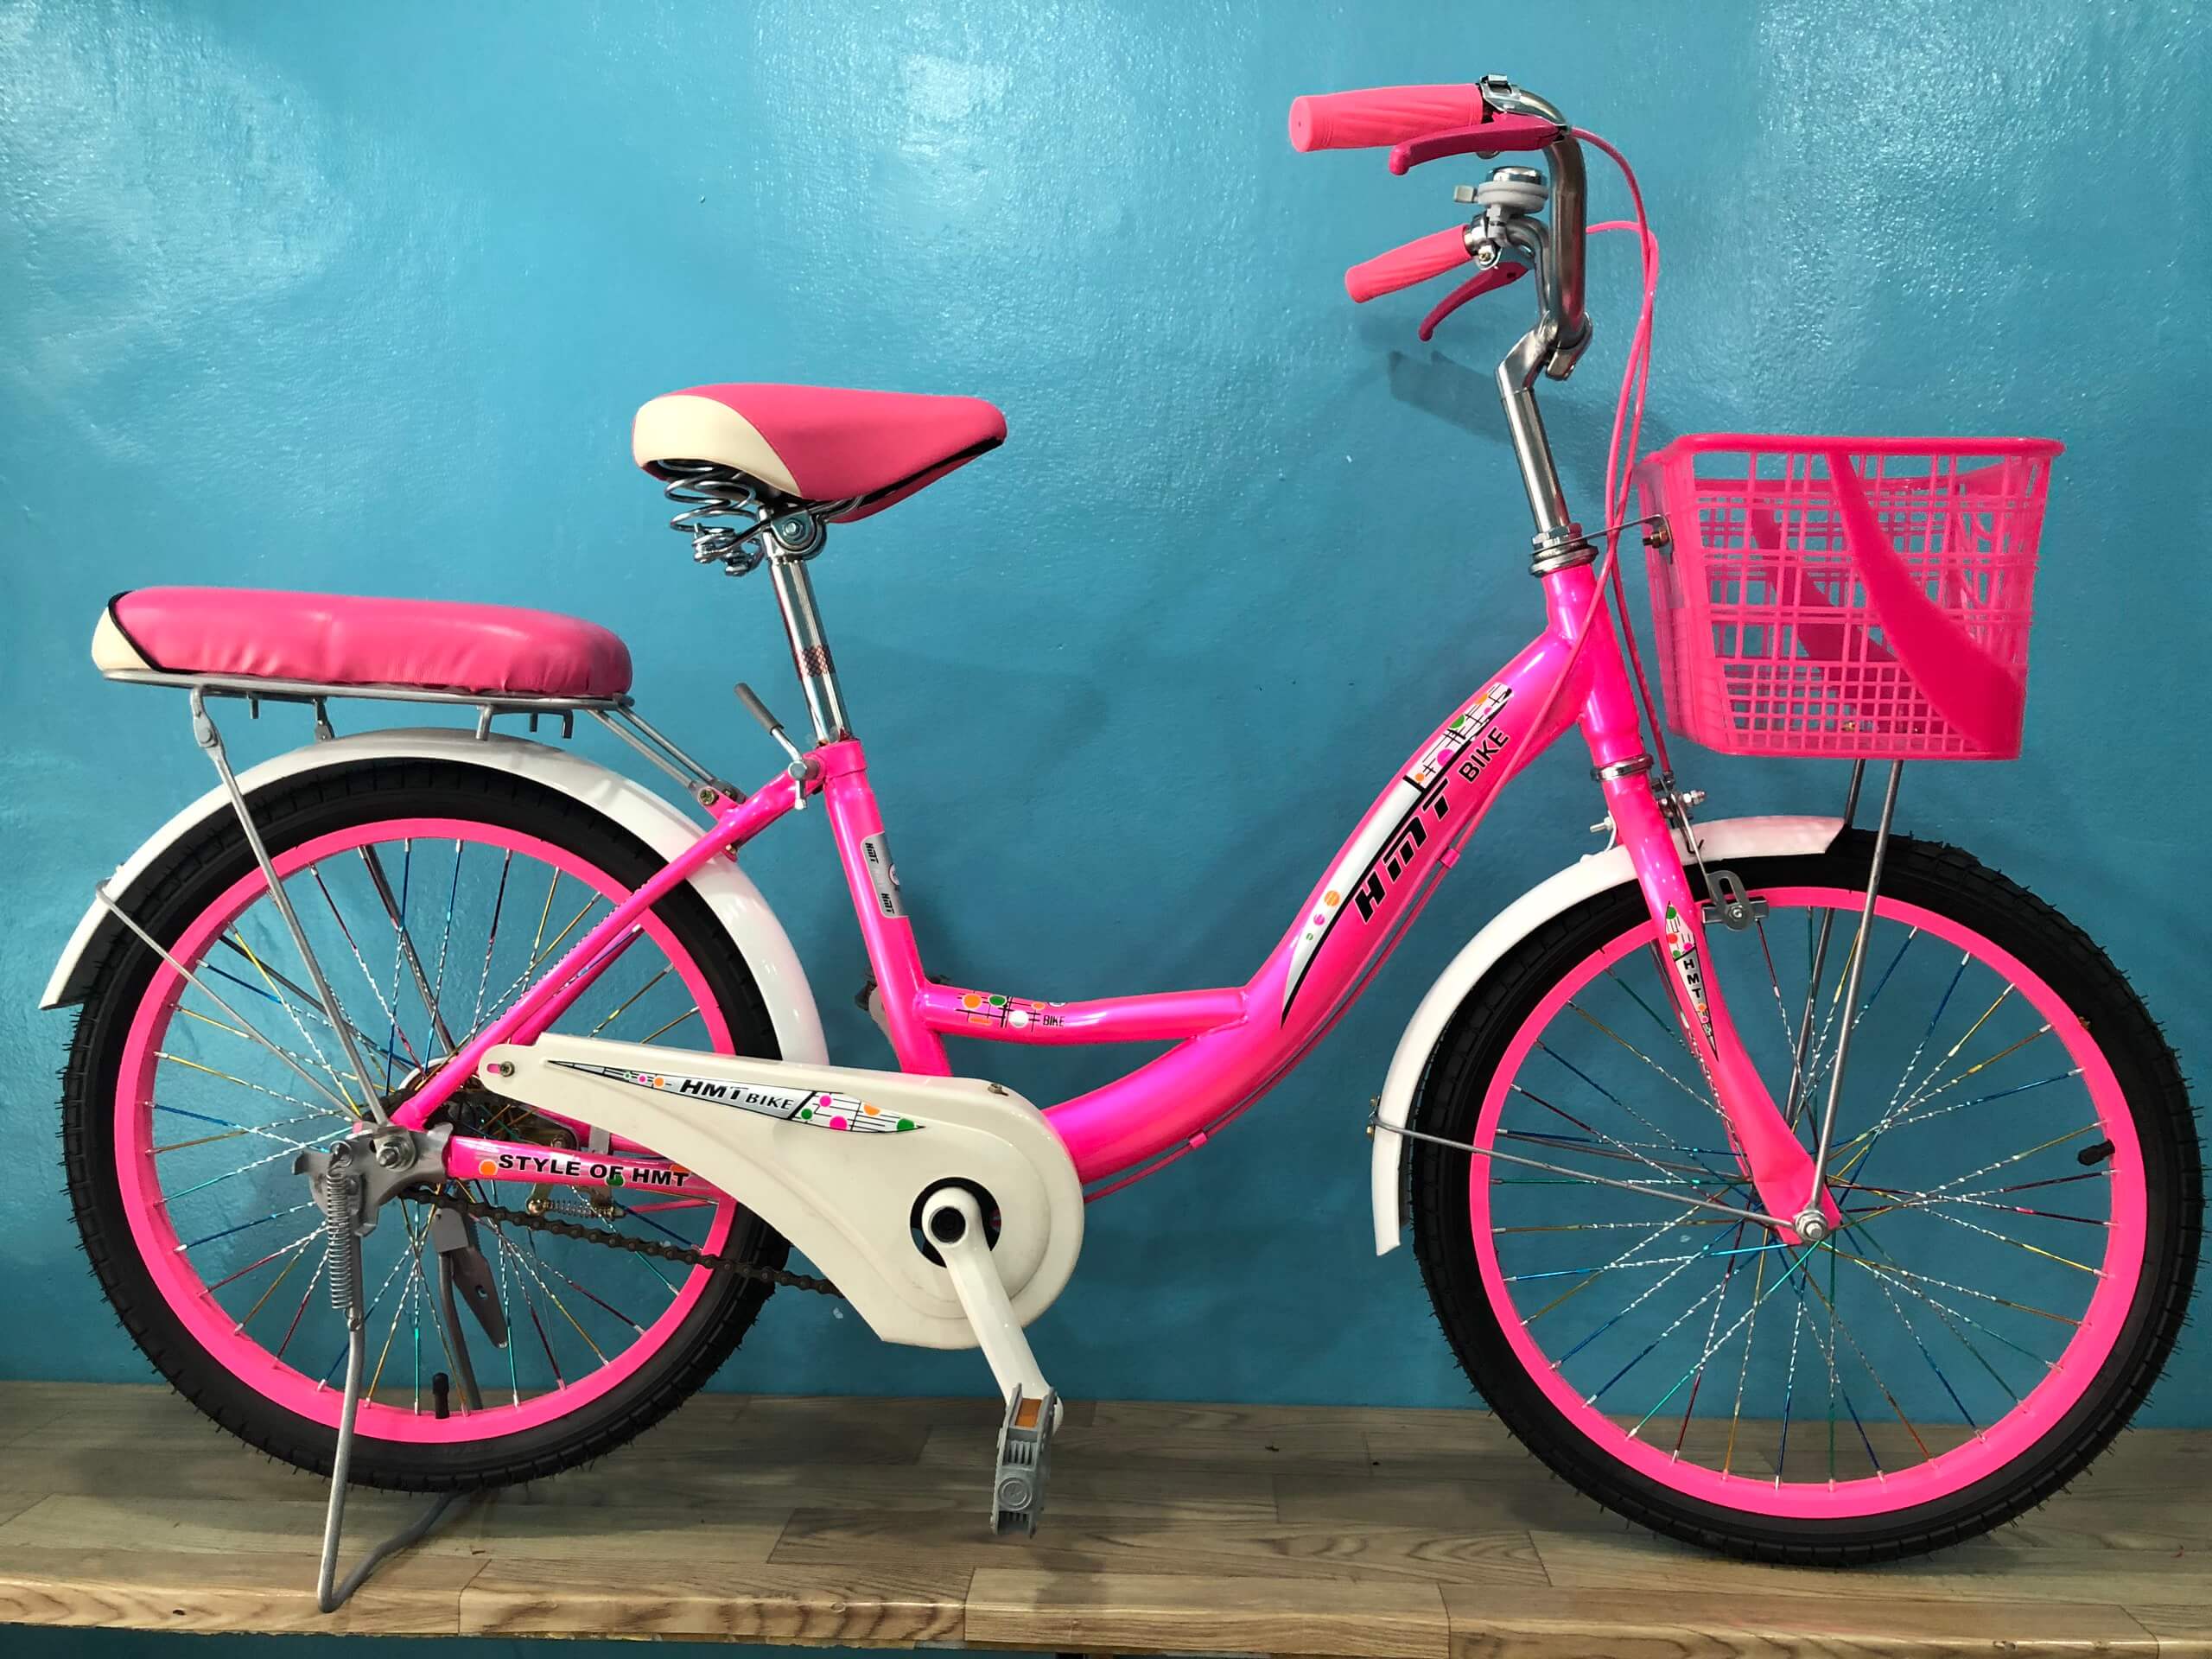 Xe đạp phổ thông 20 inch HMT màu hồng - Hàng công ty Bạn đang tìm kiếm một chiếc xe đạp phổ thông với kiểu dáng đẹp và màu sắc nổi bật? Xe đạp phổ thông 20 inch HMT màu hồng sẽ là sự lựa chọn hoàn hảo cho bạn. Với thiết kế đơn giản nhưng tinh tế, xe đạp HMT sẽ mang lại trải nghiệm đi xe tuyệt vời cho bạn. Đặc biệt, sản phẩm này là hàng công ty chất lượng, đảm bảo uy tín và an toàn cho người sử dụng.